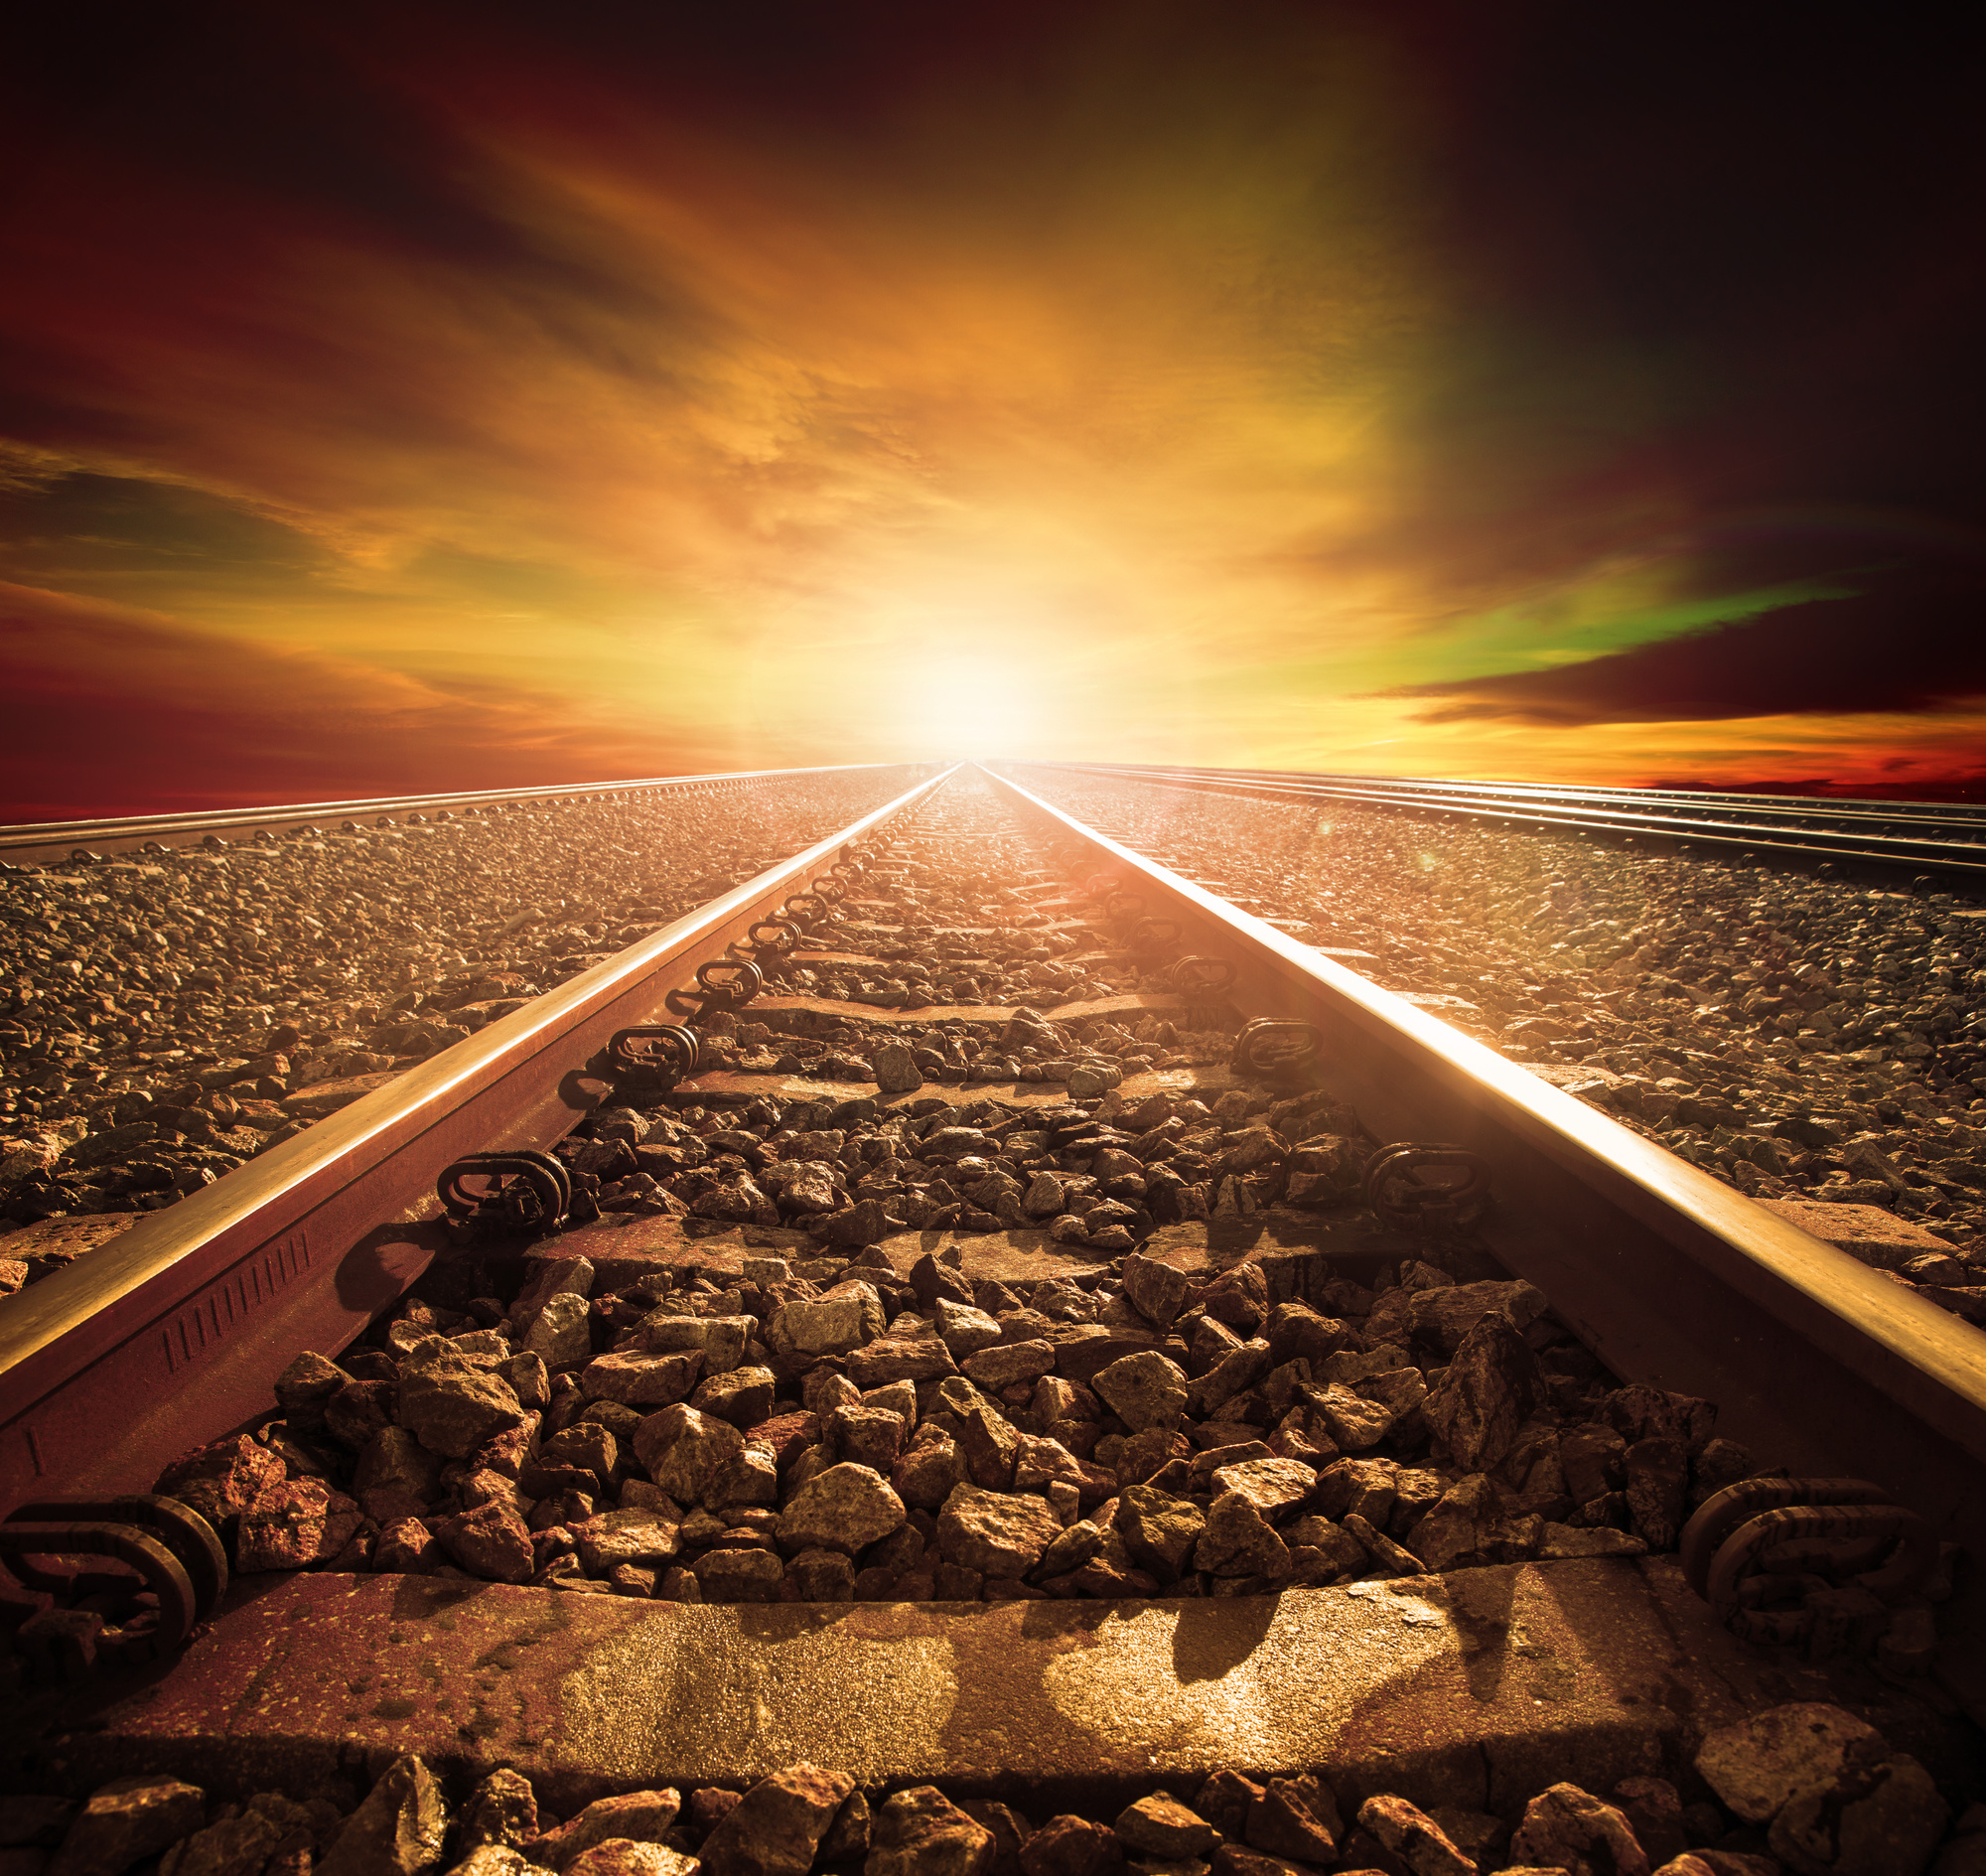 El misterio del razonamiento espacial: ¿por qué no vemos las vías del tren en paralelo?